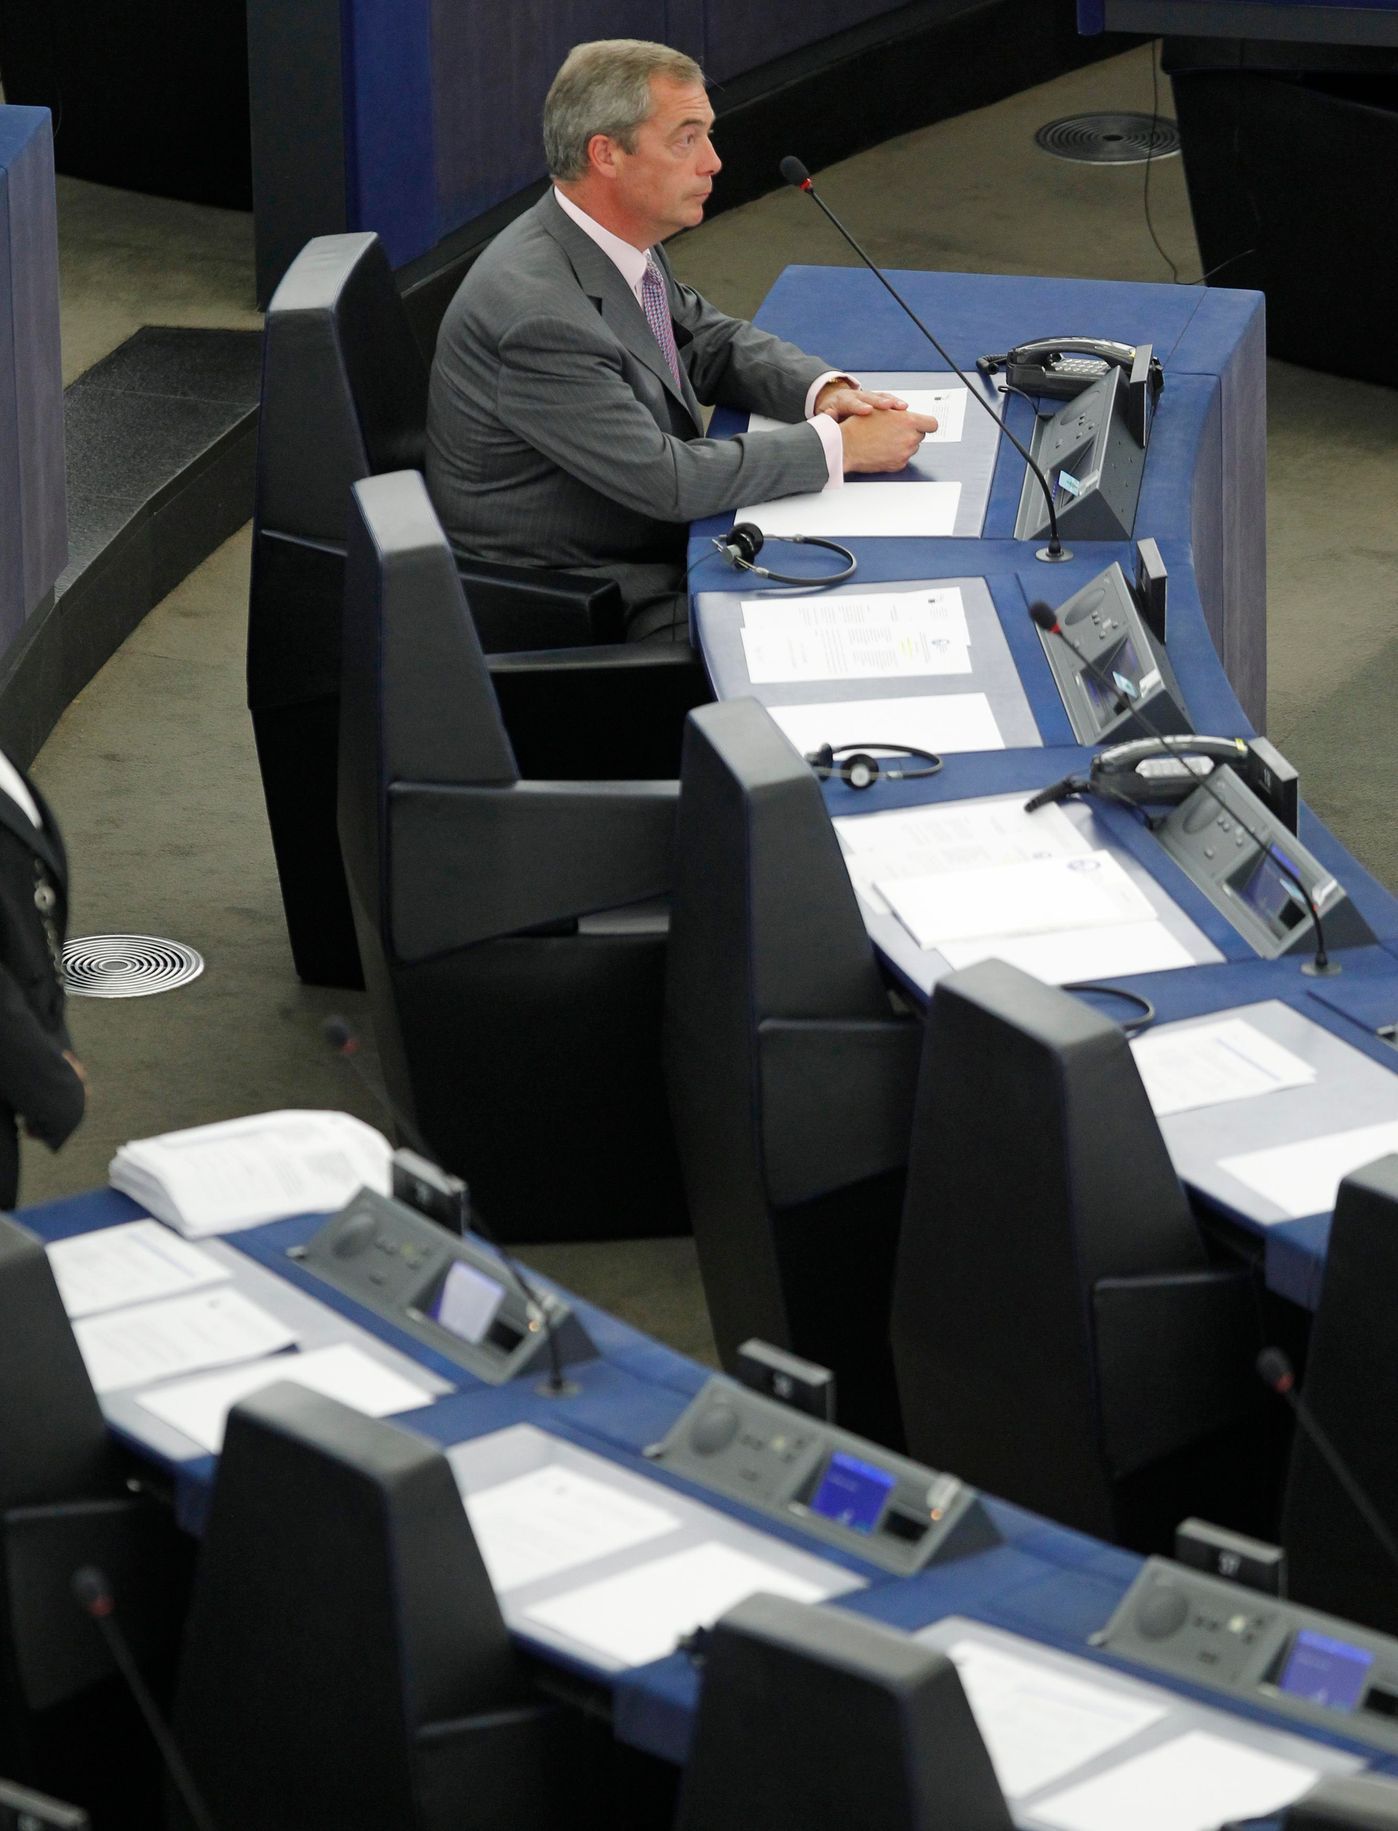 Evropský parlament - první den - 1. července 2014